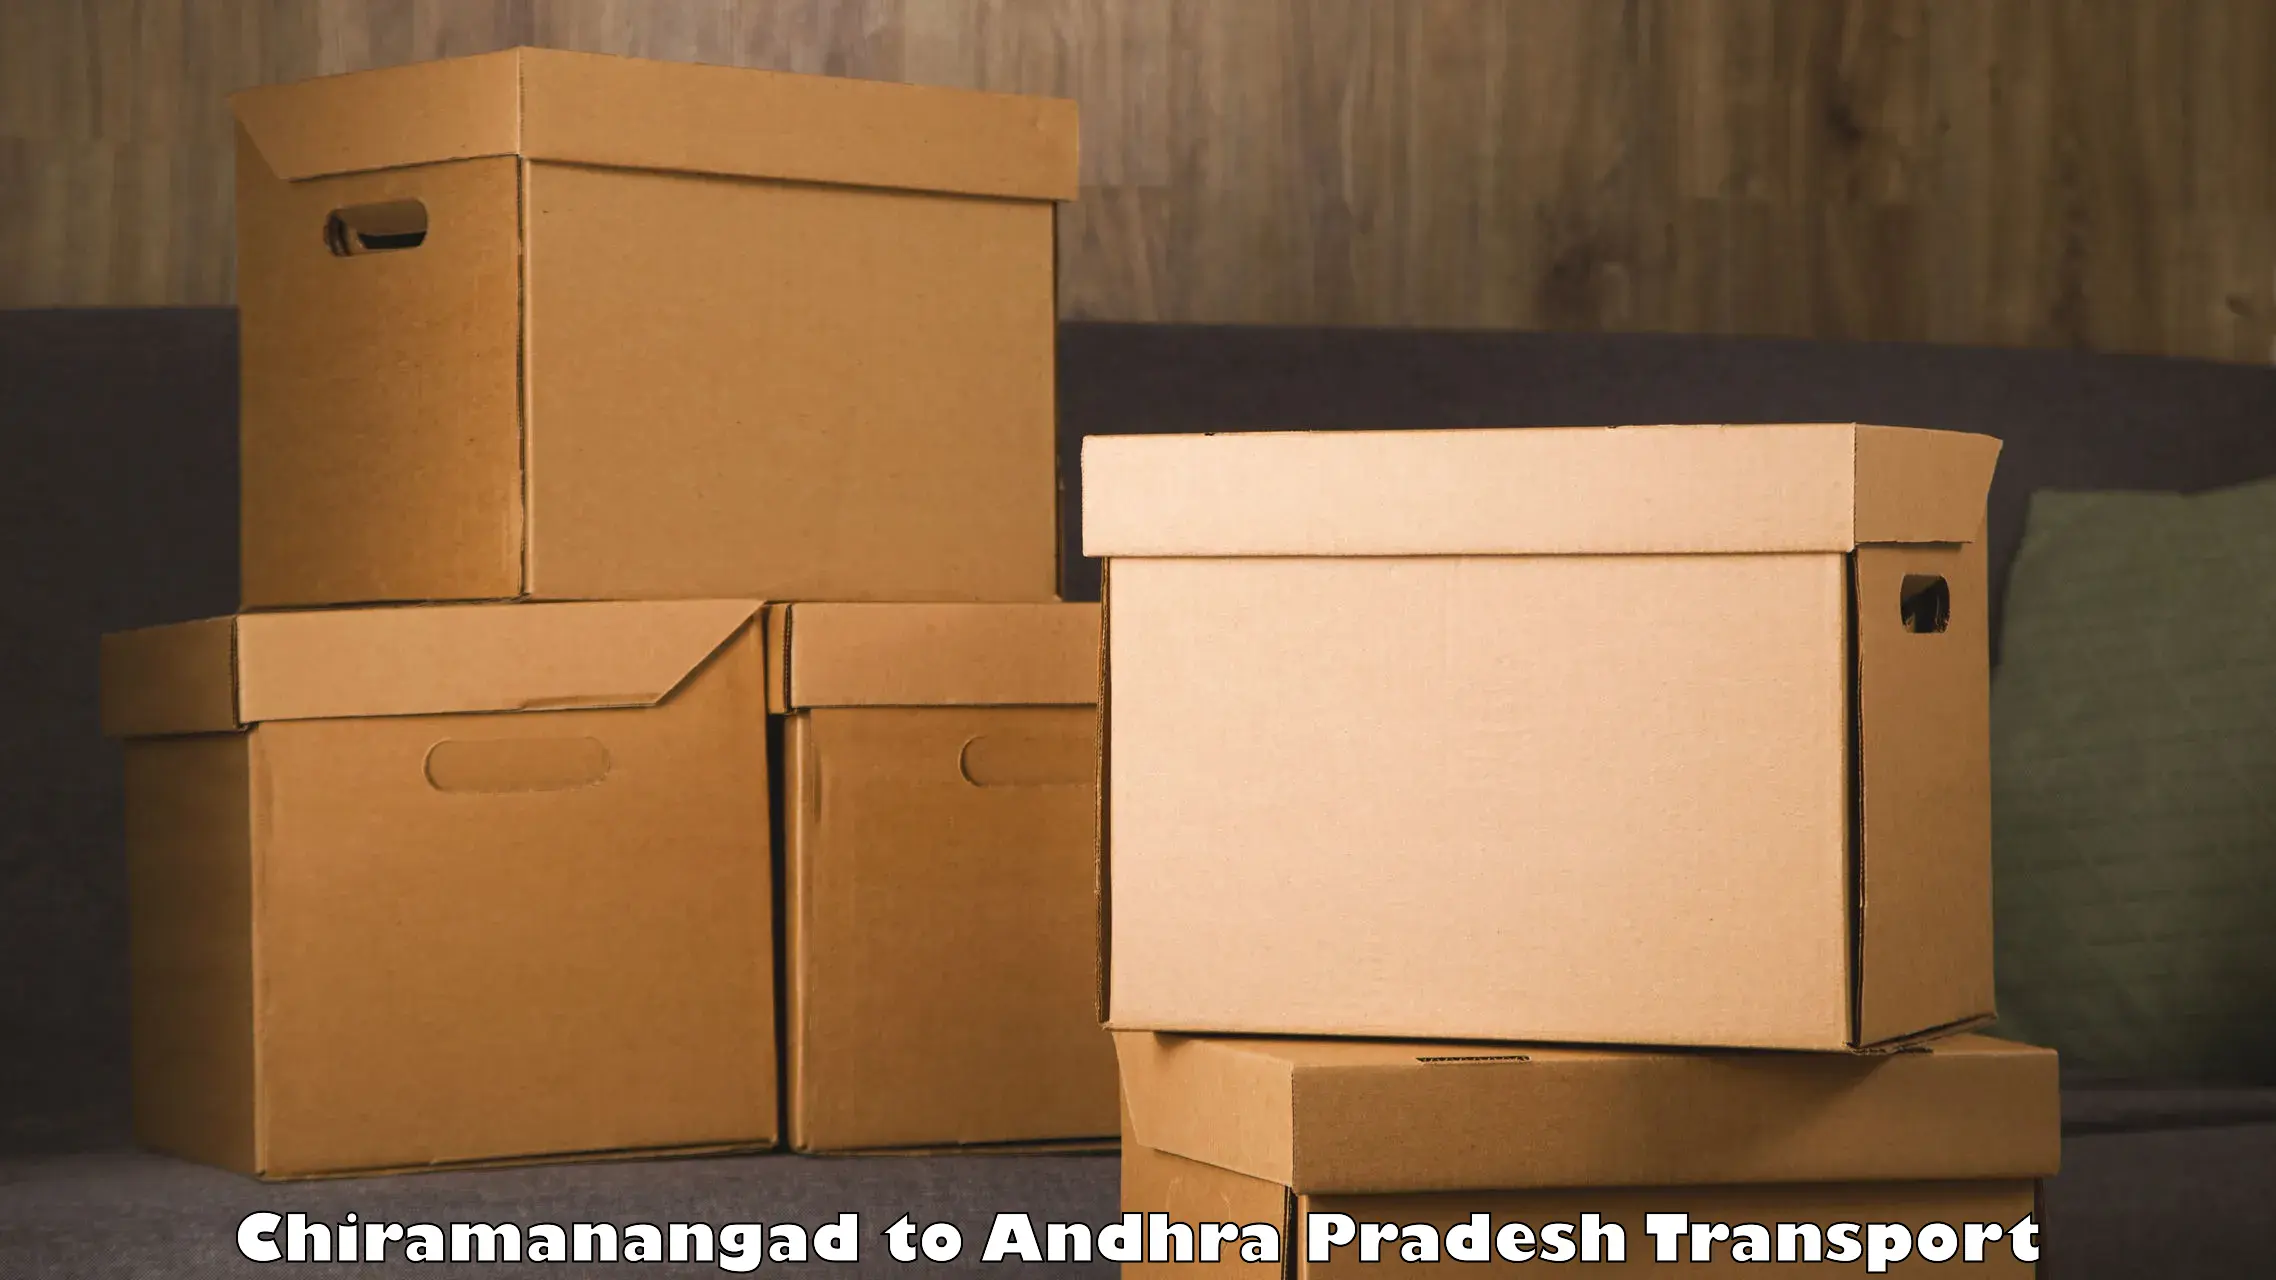 Part load transport service in India Chiramanangad to Yerravaram